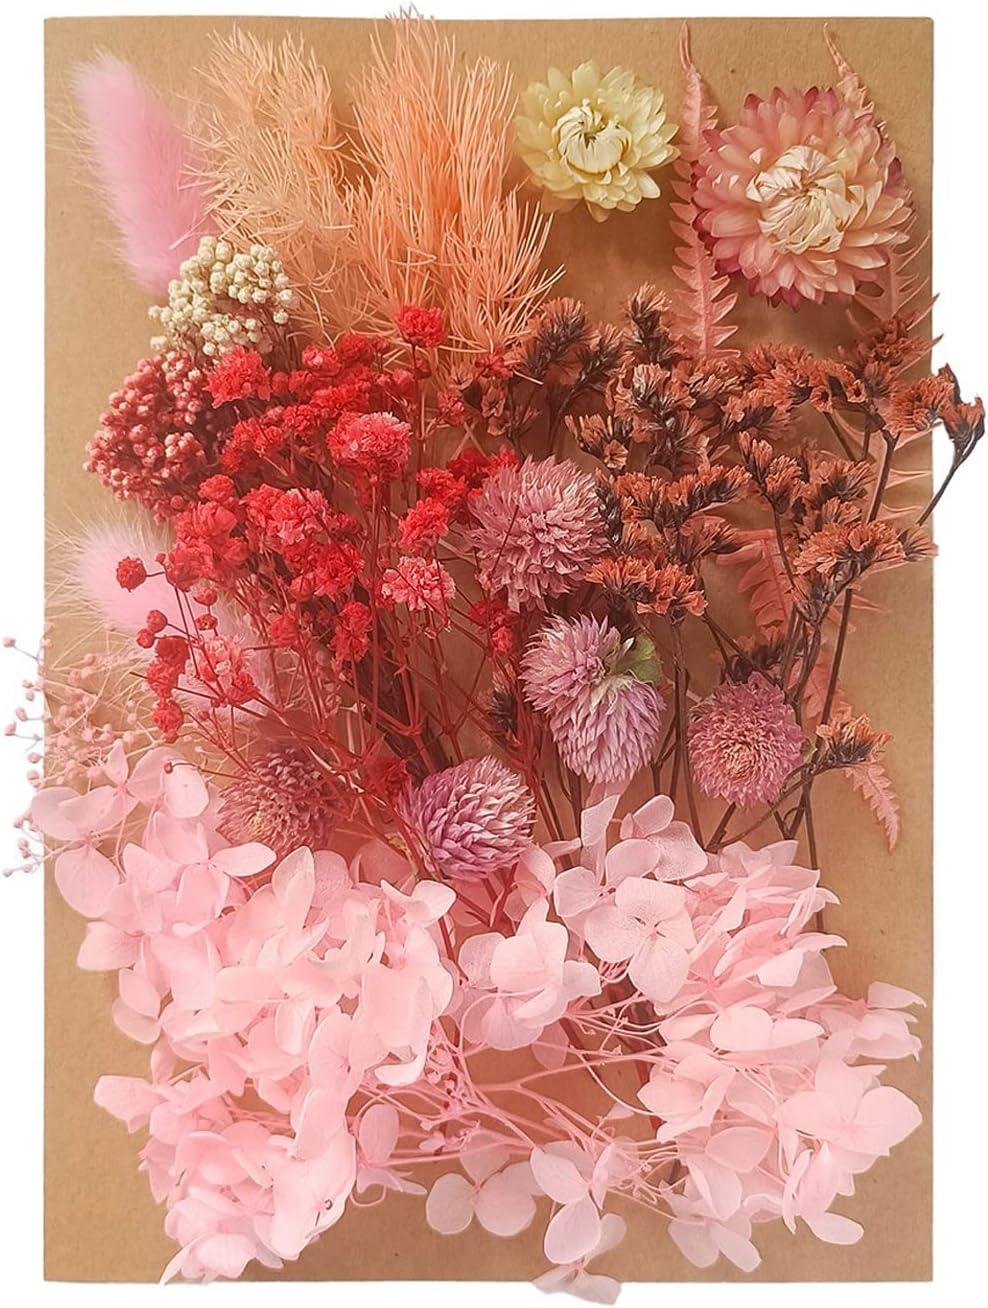 Home Decor, Resin Art Dry Flowers Resin Dry Flowers For Resin Arts